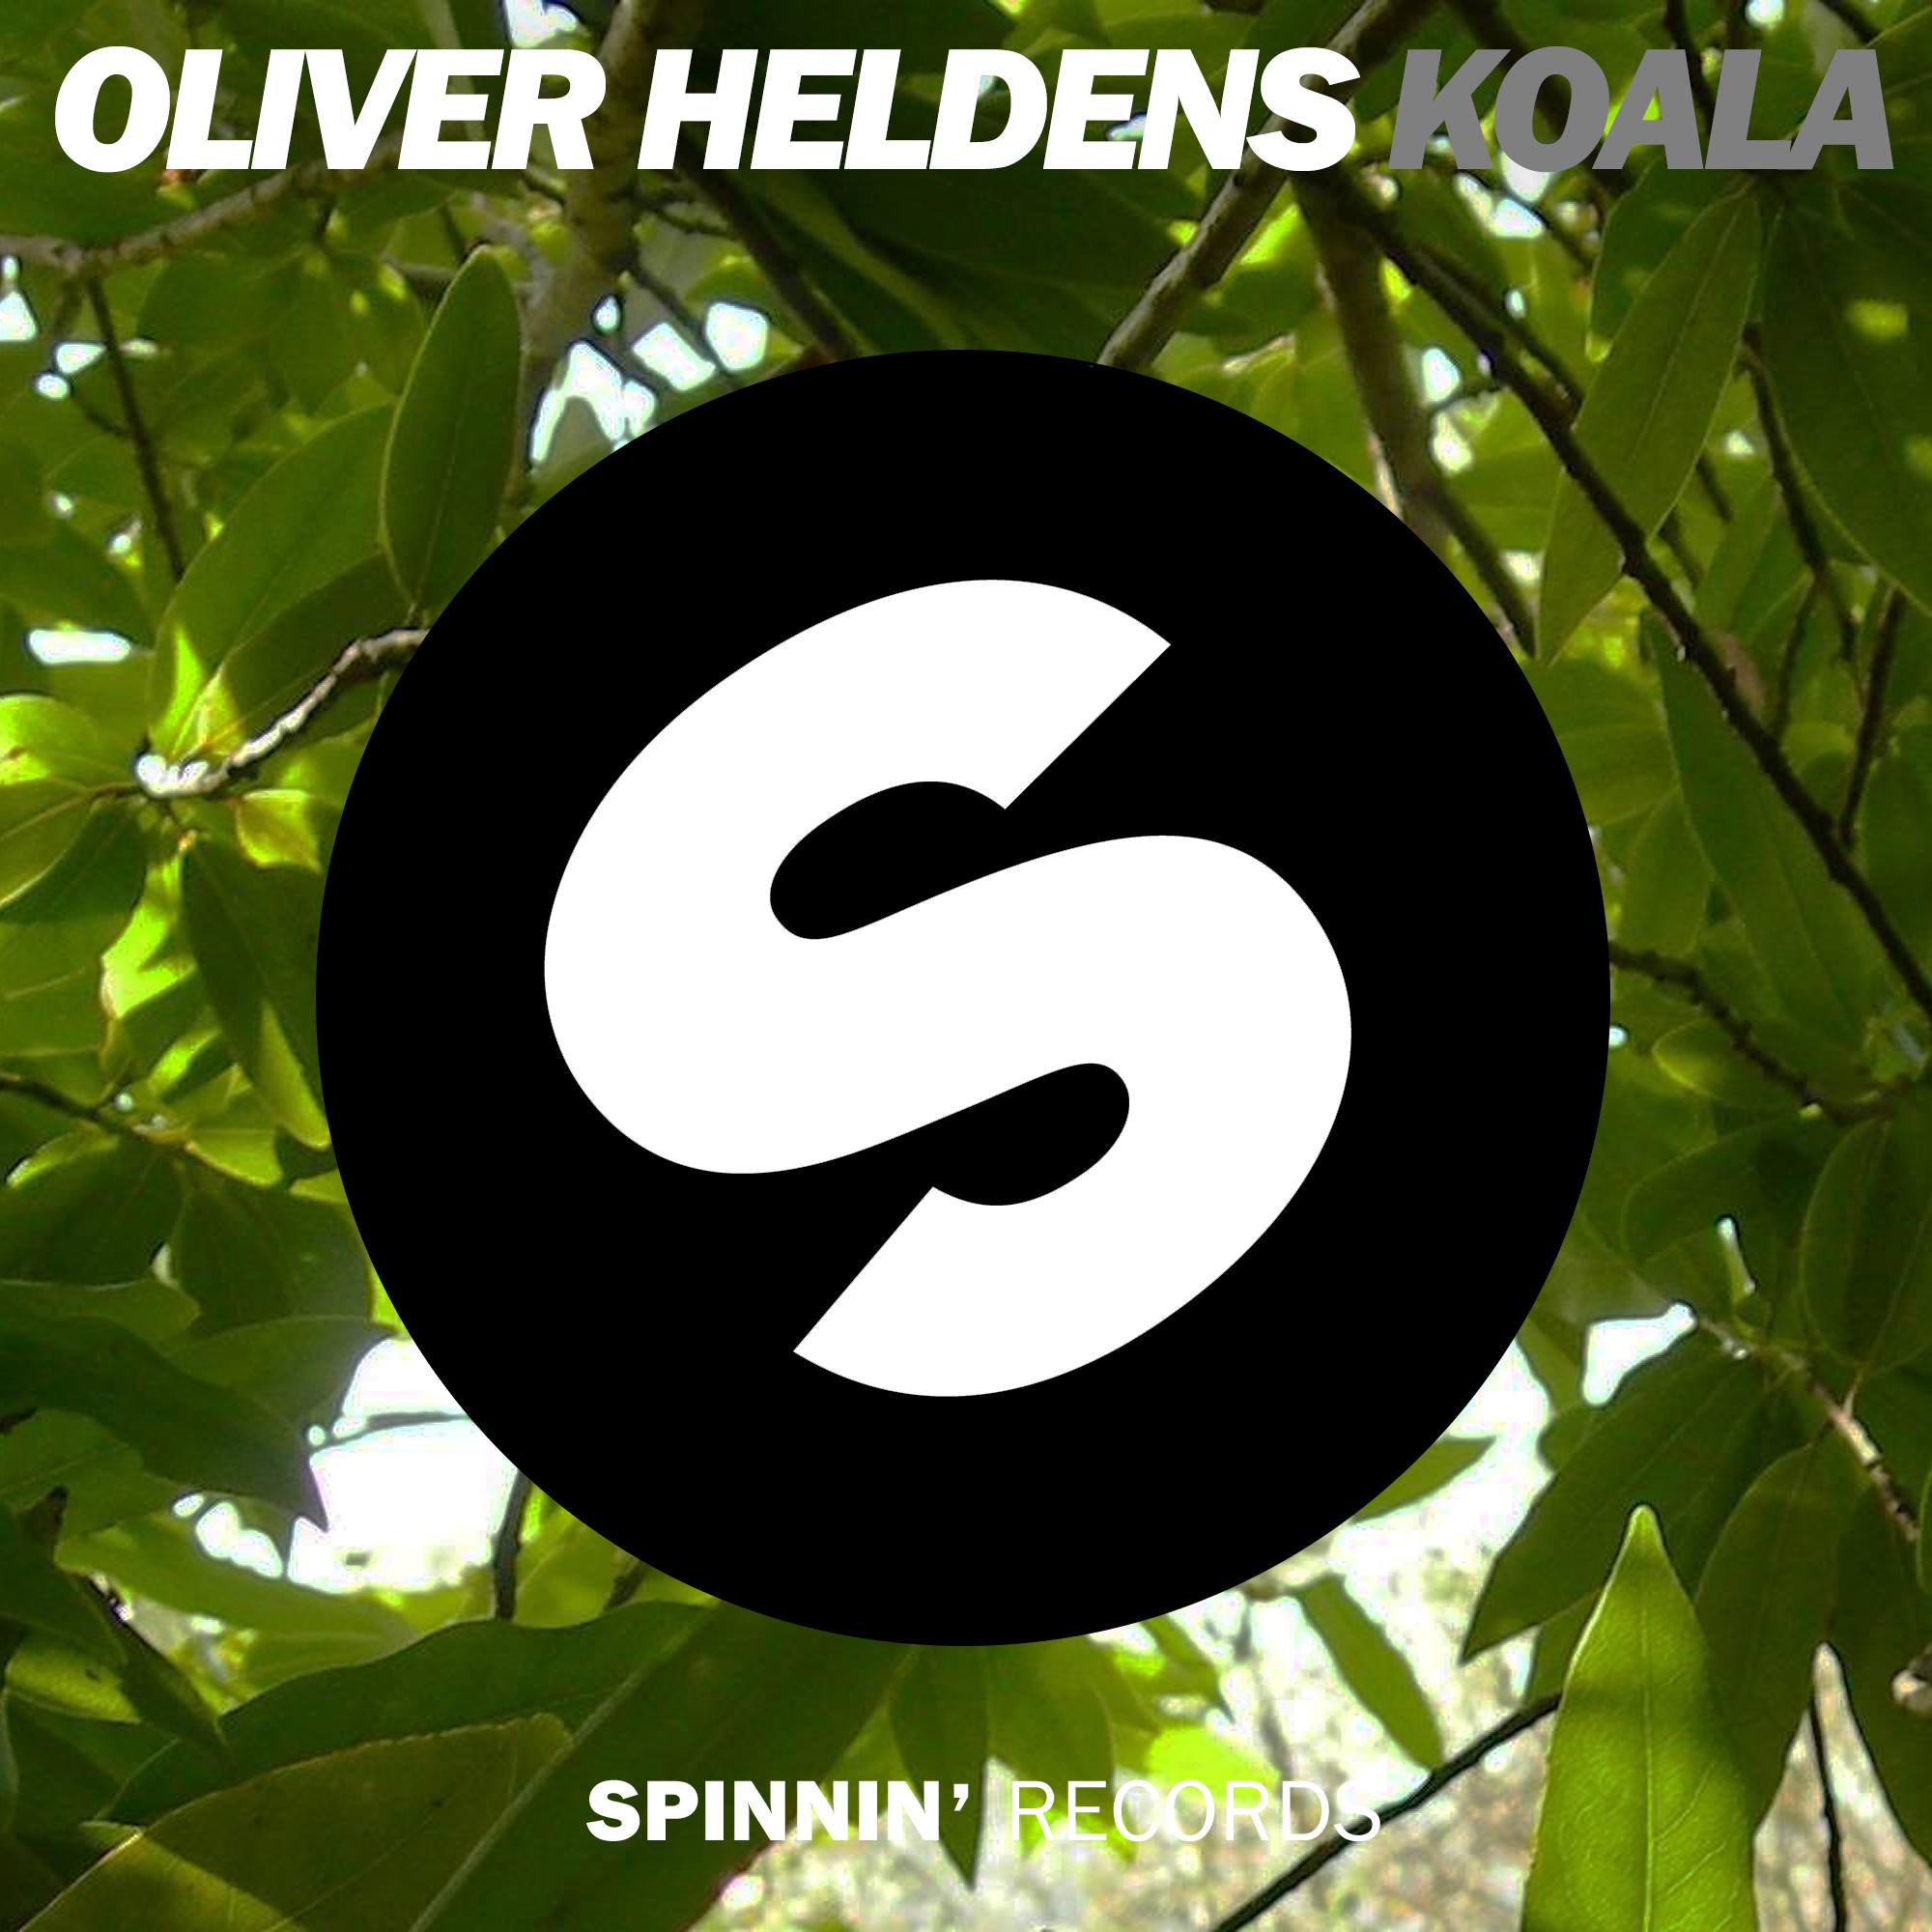 Oliver Heldens - Koala [August 4 - Spinnin Records] | Dance Rebels